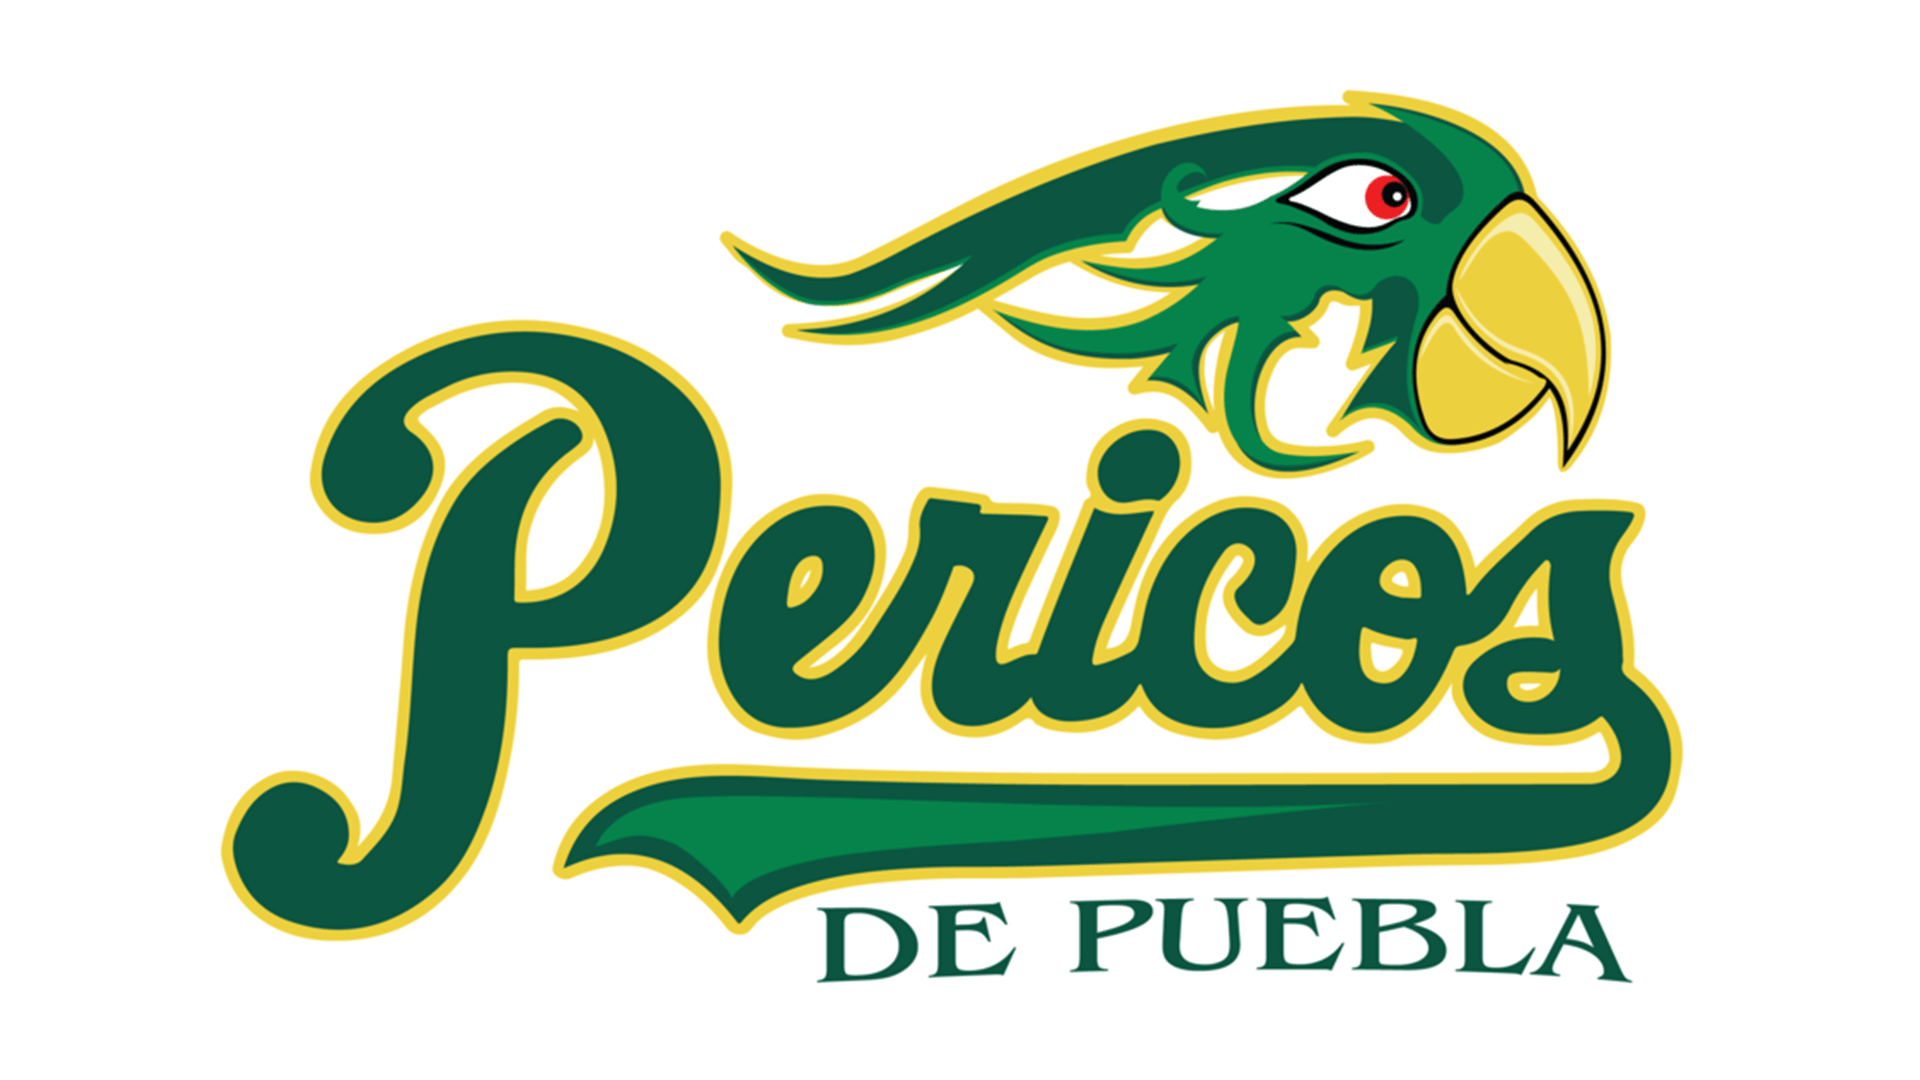 Puebla Logo - Meaning Puebla Pericos logo and symbol | history and evolution